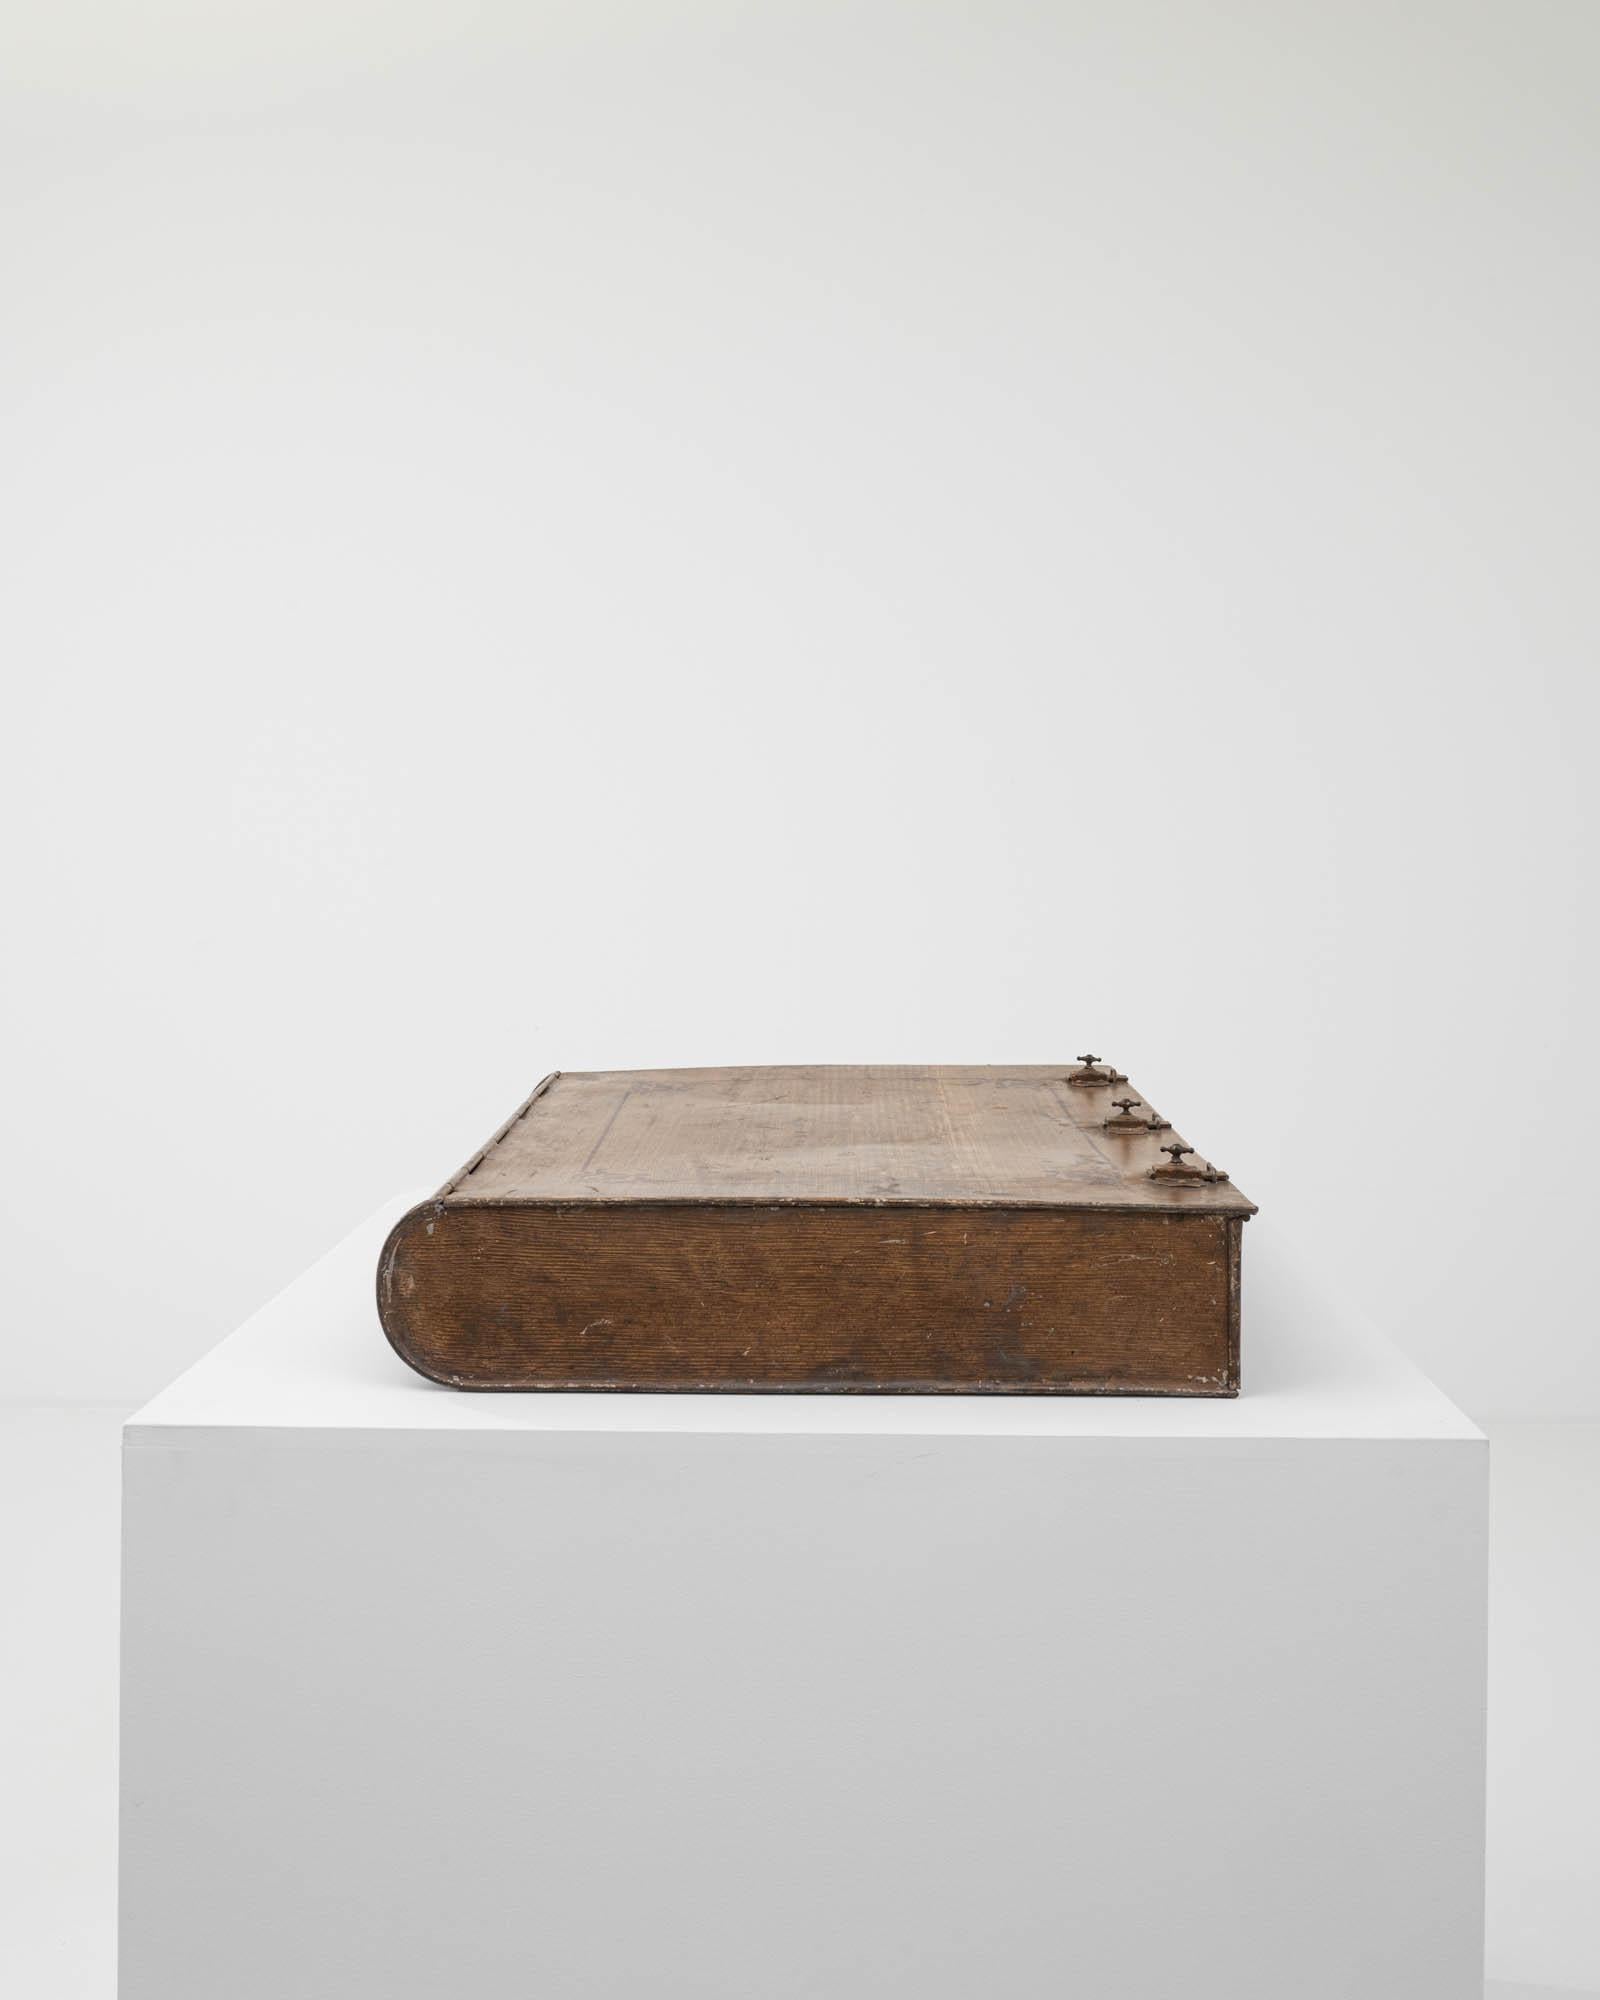 Dieser einzigartige Schatz wurde im 19. Jahrhundert in Frankreich geschaffen. Diese skurrile und einzigartige Metallbox in Form eines ledergebundenen Buches ist mit einem Trompe-l'œil-Finish aus Holzimitat bemalt, das die Textur von Eichenholz